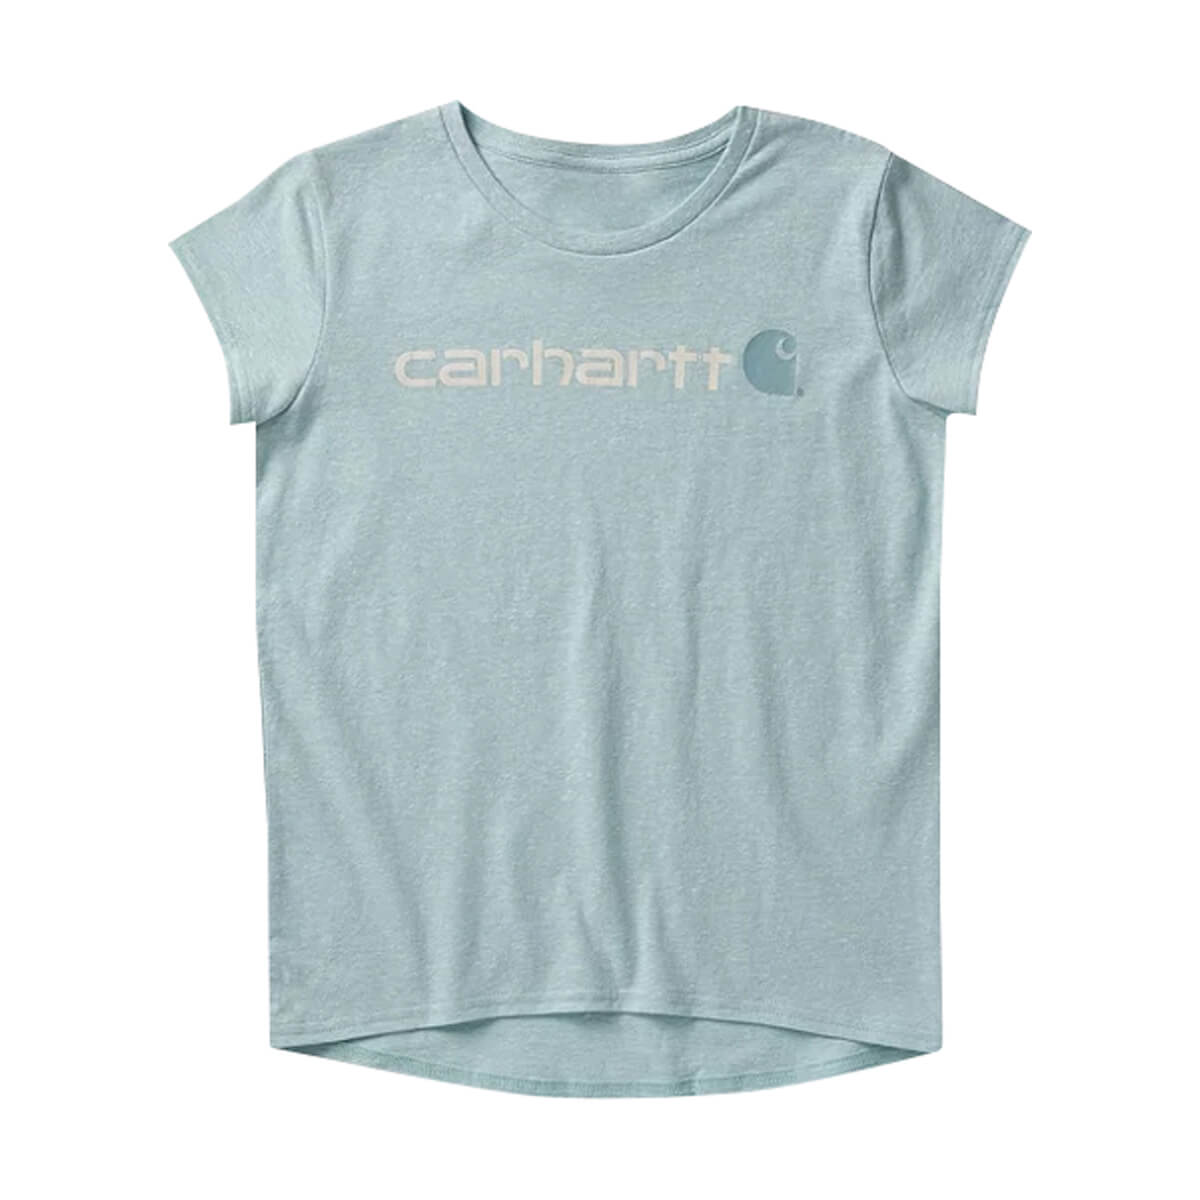 Carhartt Girls Short-Sleeve Crew Neck Core Logo T-Shirt - Blue